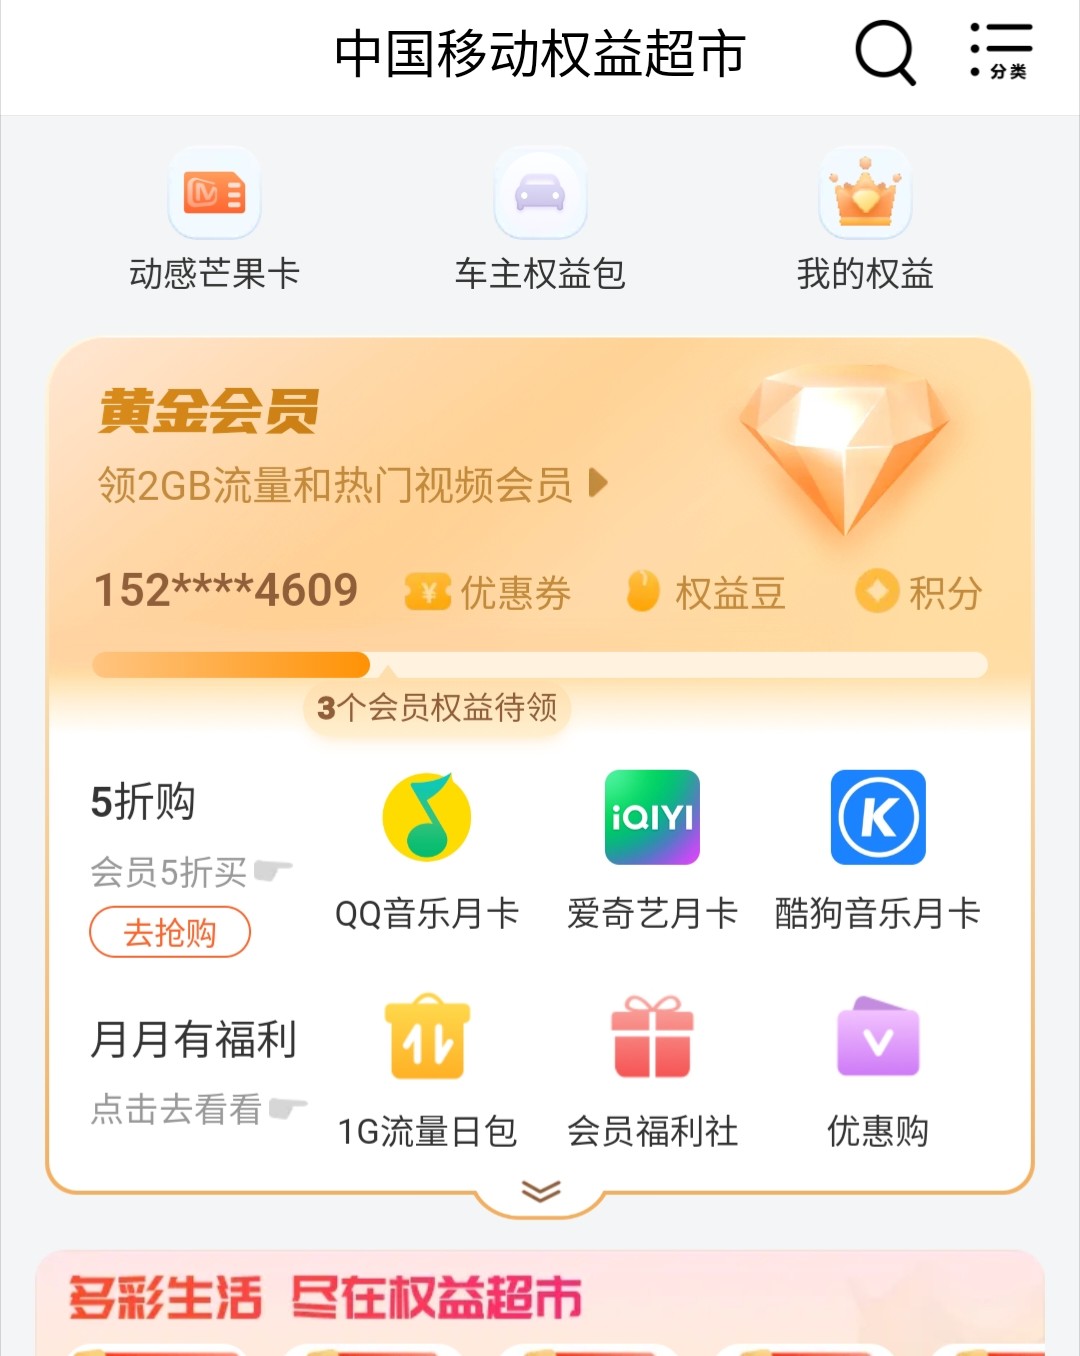 郑州市如何每月9元拿下QQ音乐绿钻？